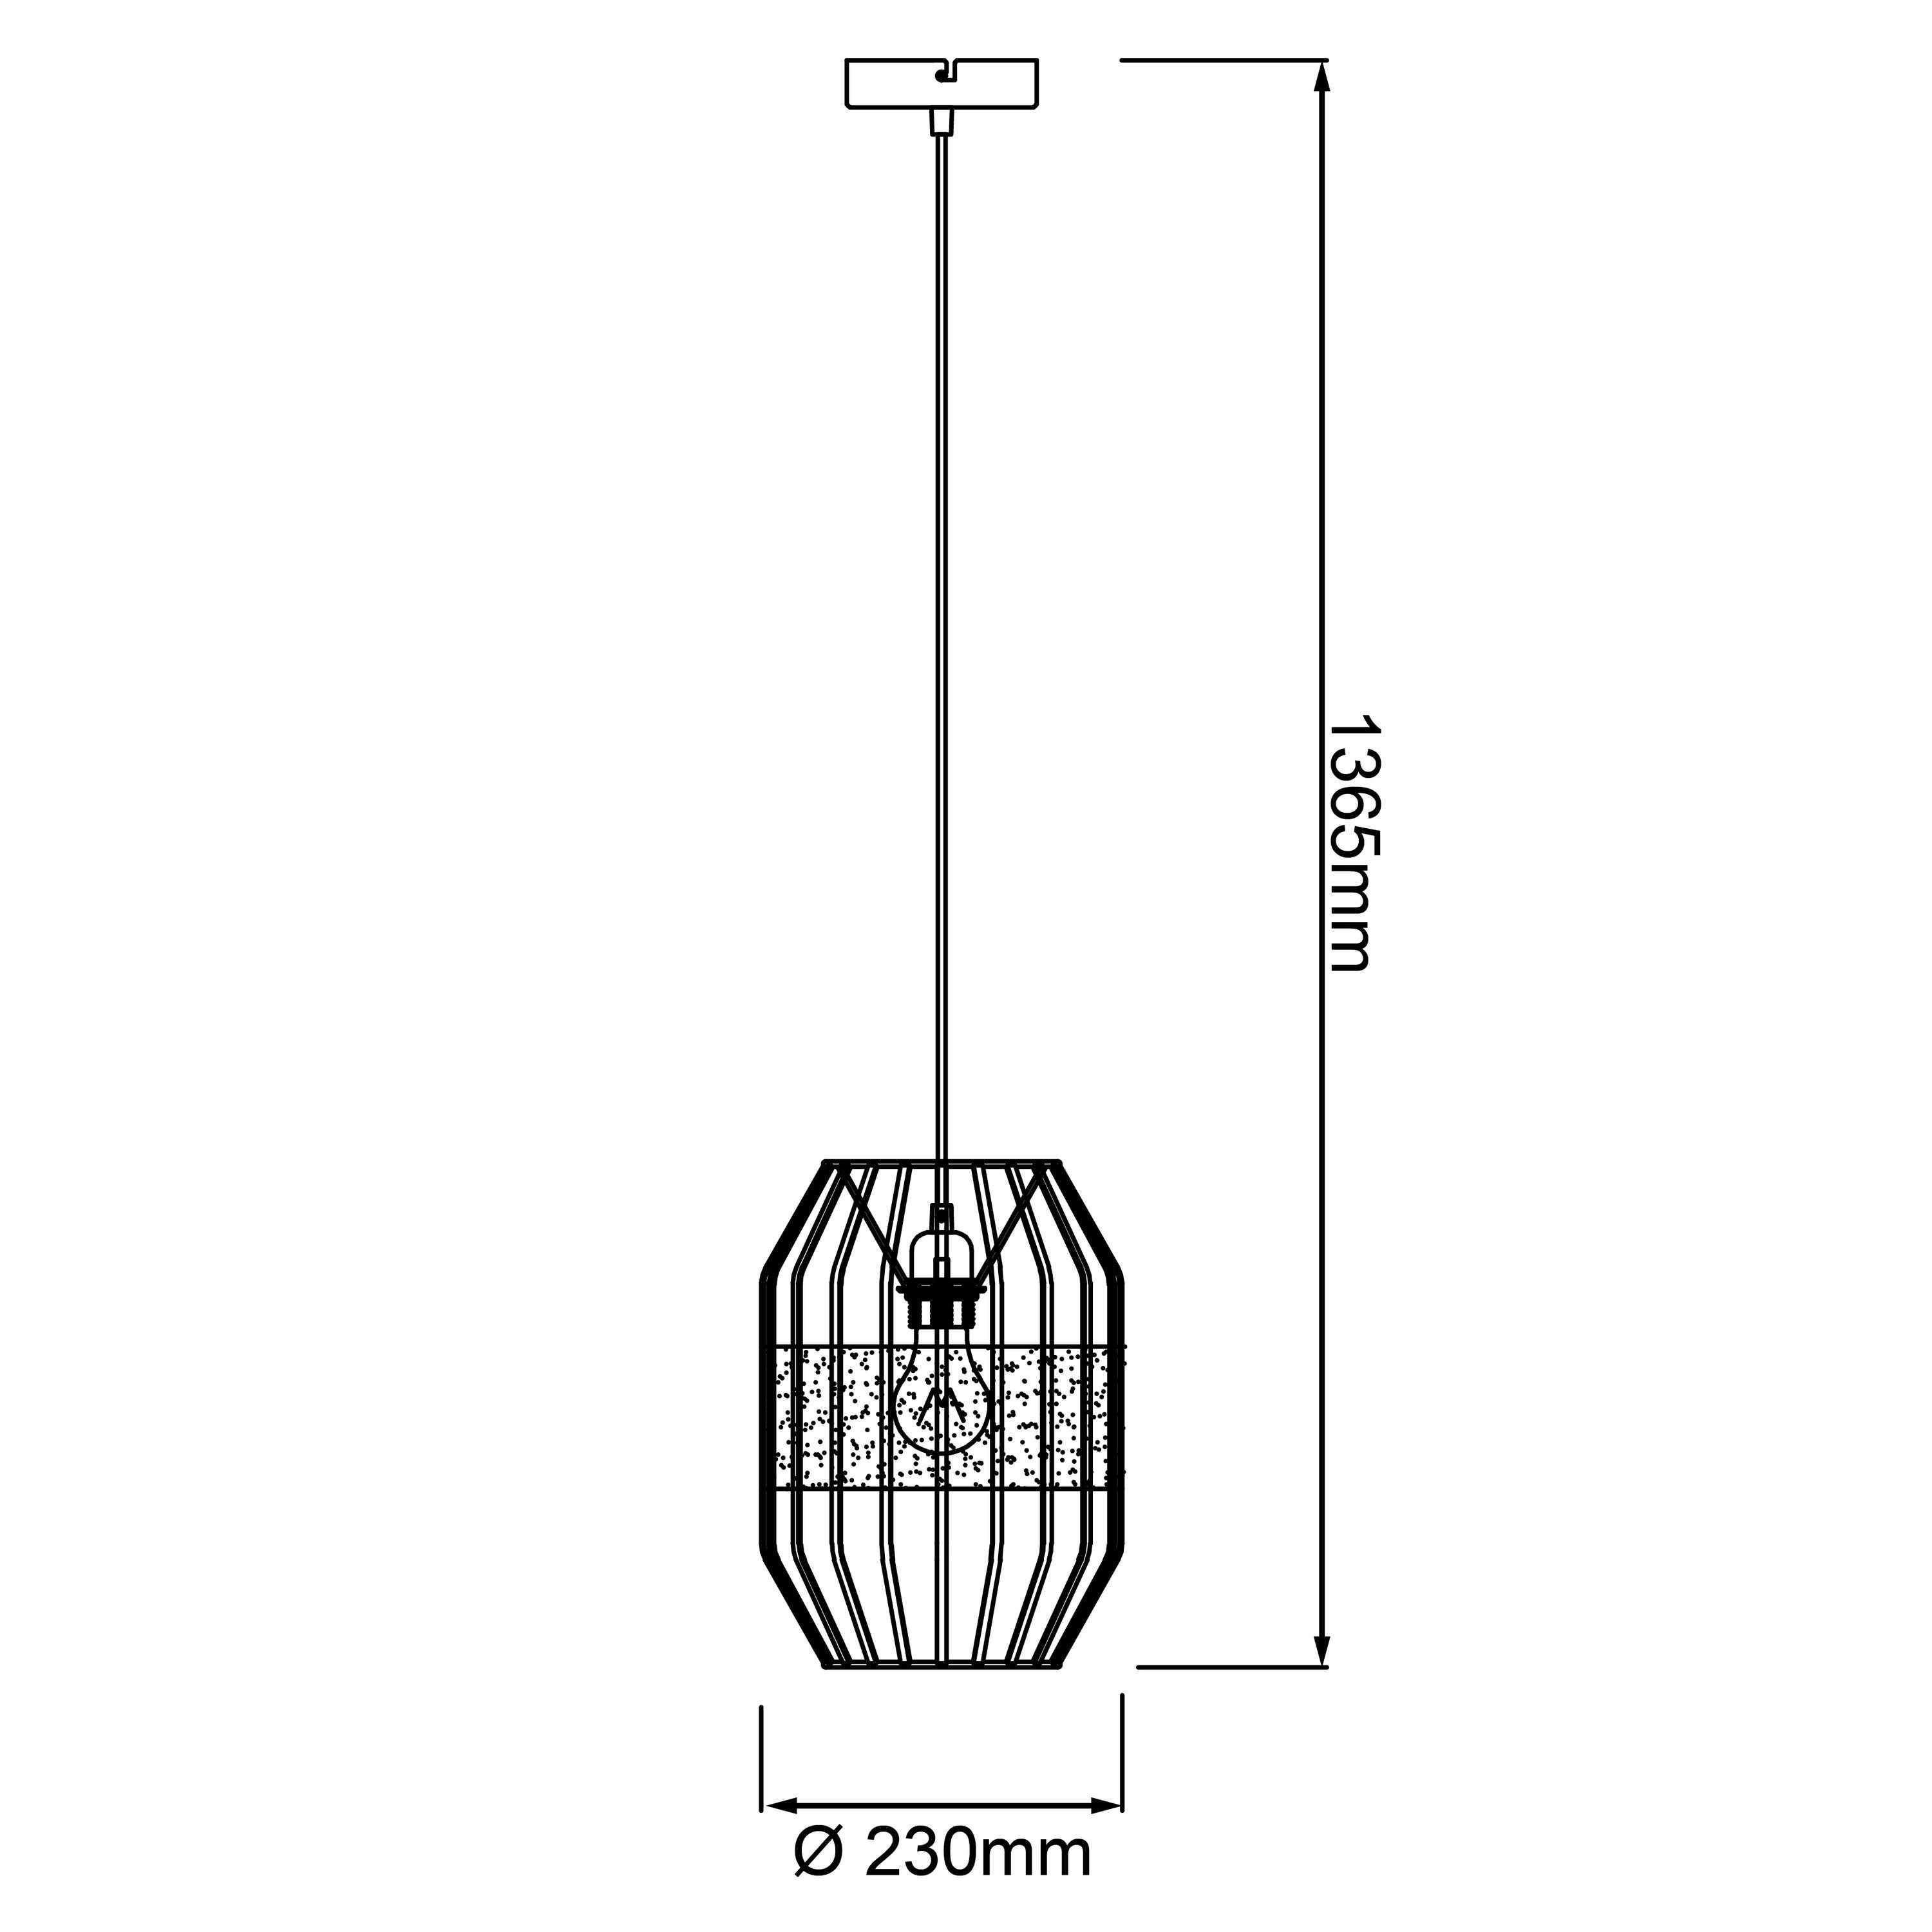 Brilliant Pendelleuchte Slope, Slope schwarz/natur, Pendelleuchte E27, Lampe, 40W, 1x 23cm Kabel A60